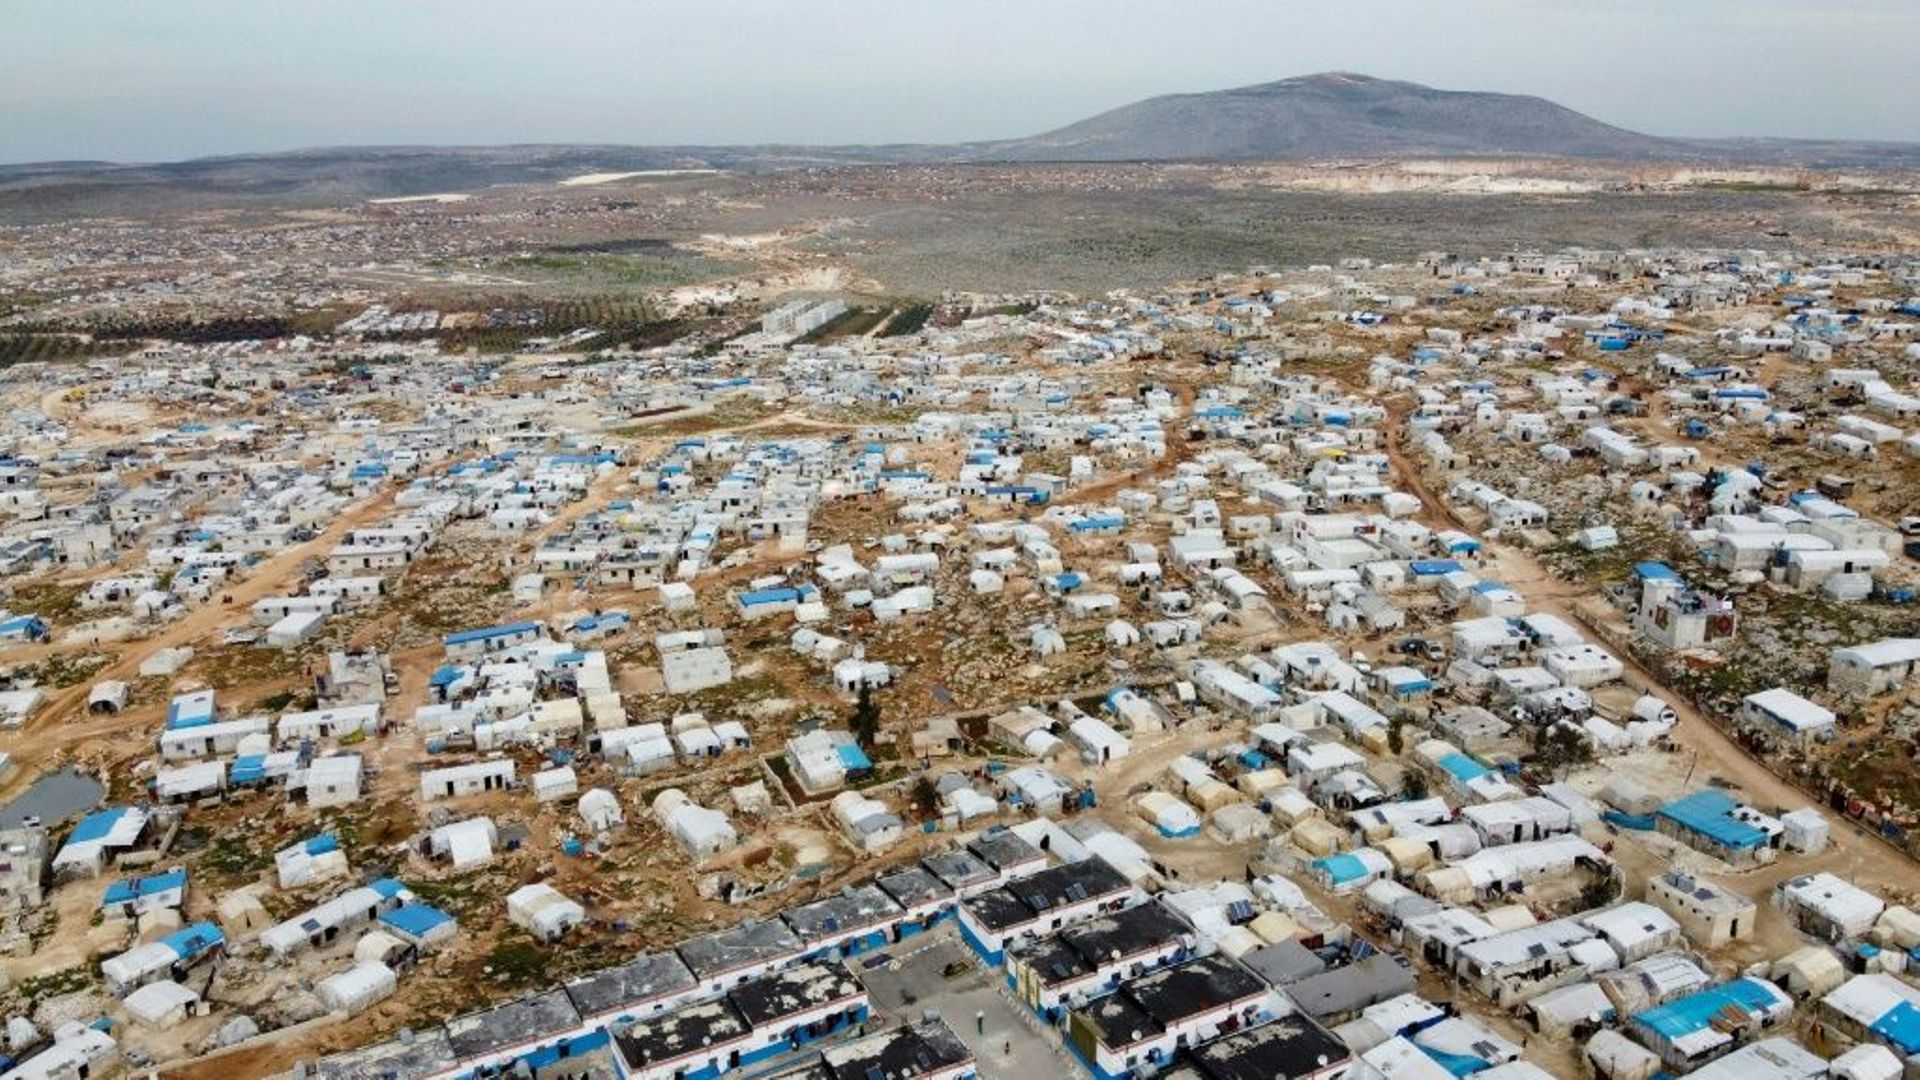 Vue aérienne du camp de déplacés syriens à Dayr Hassan, le 5 mars 2020 dans la proince d'Idleb